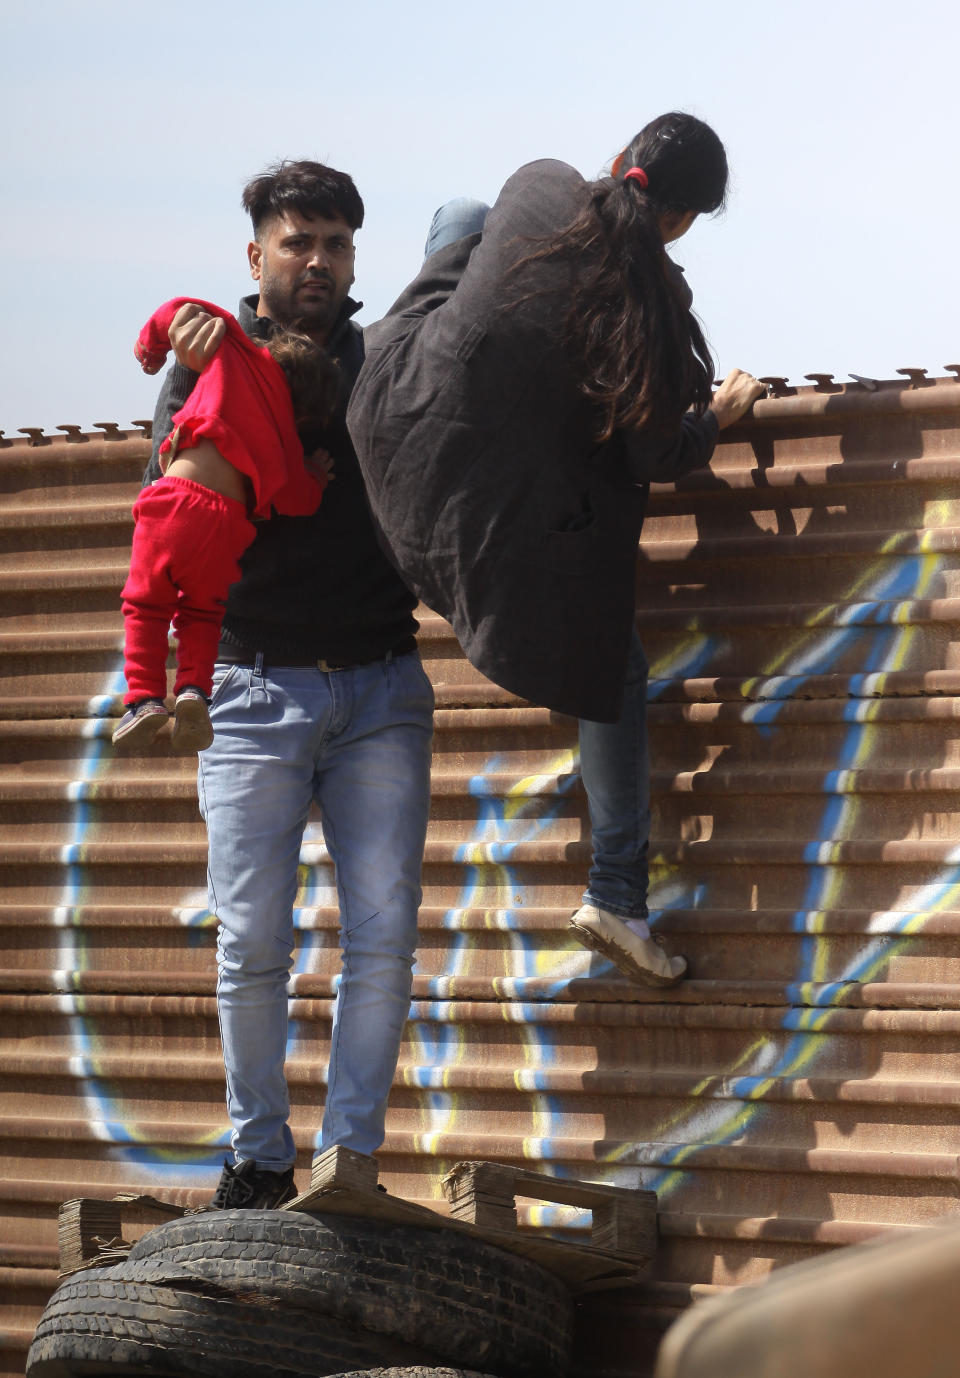 (FOTOS) La familia migrante que cruzó ilegalmente la frontera frente a los muros de Trump